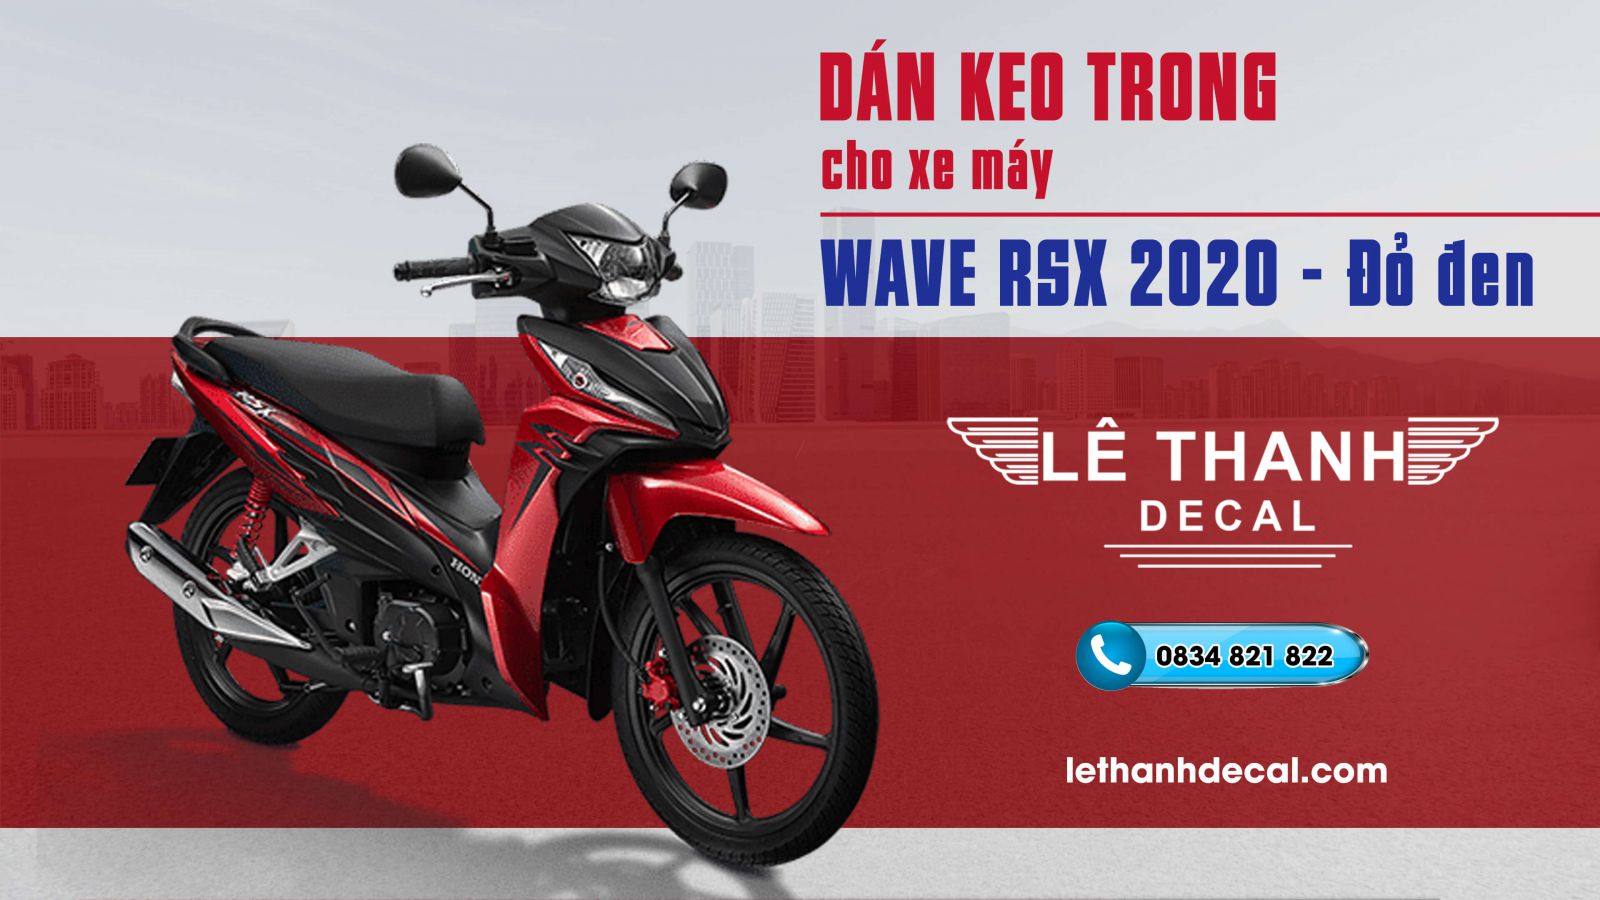 Bộ nhựa dàn áo RSX 110cc 2020 Vành đúcCó 5 màu Xanh  TrắngXám đỏXanh  xám đenĐỏ đen  chinhhangvn